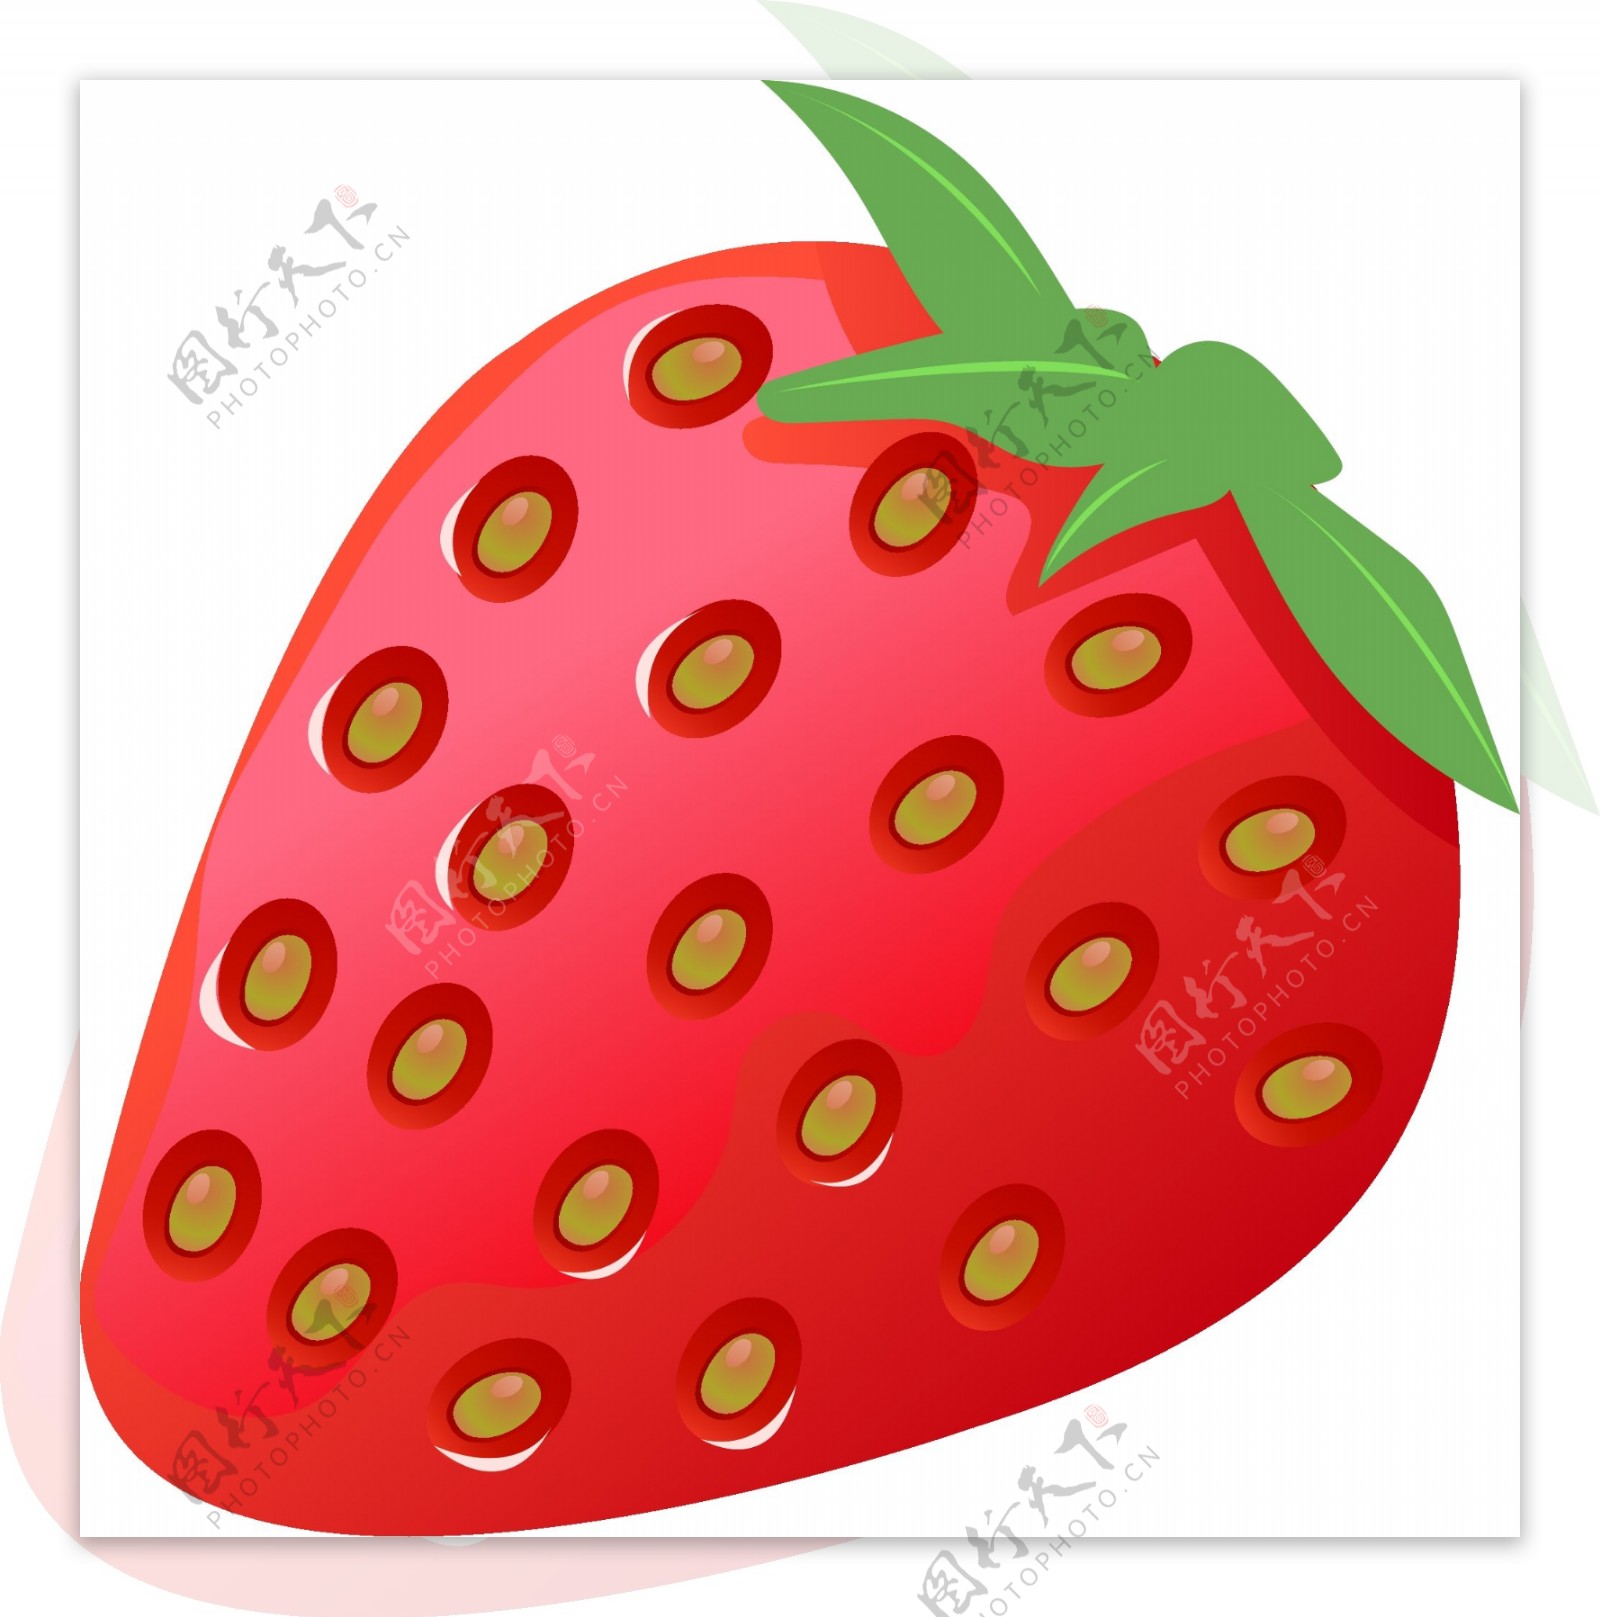 红色的仿真草莓插画